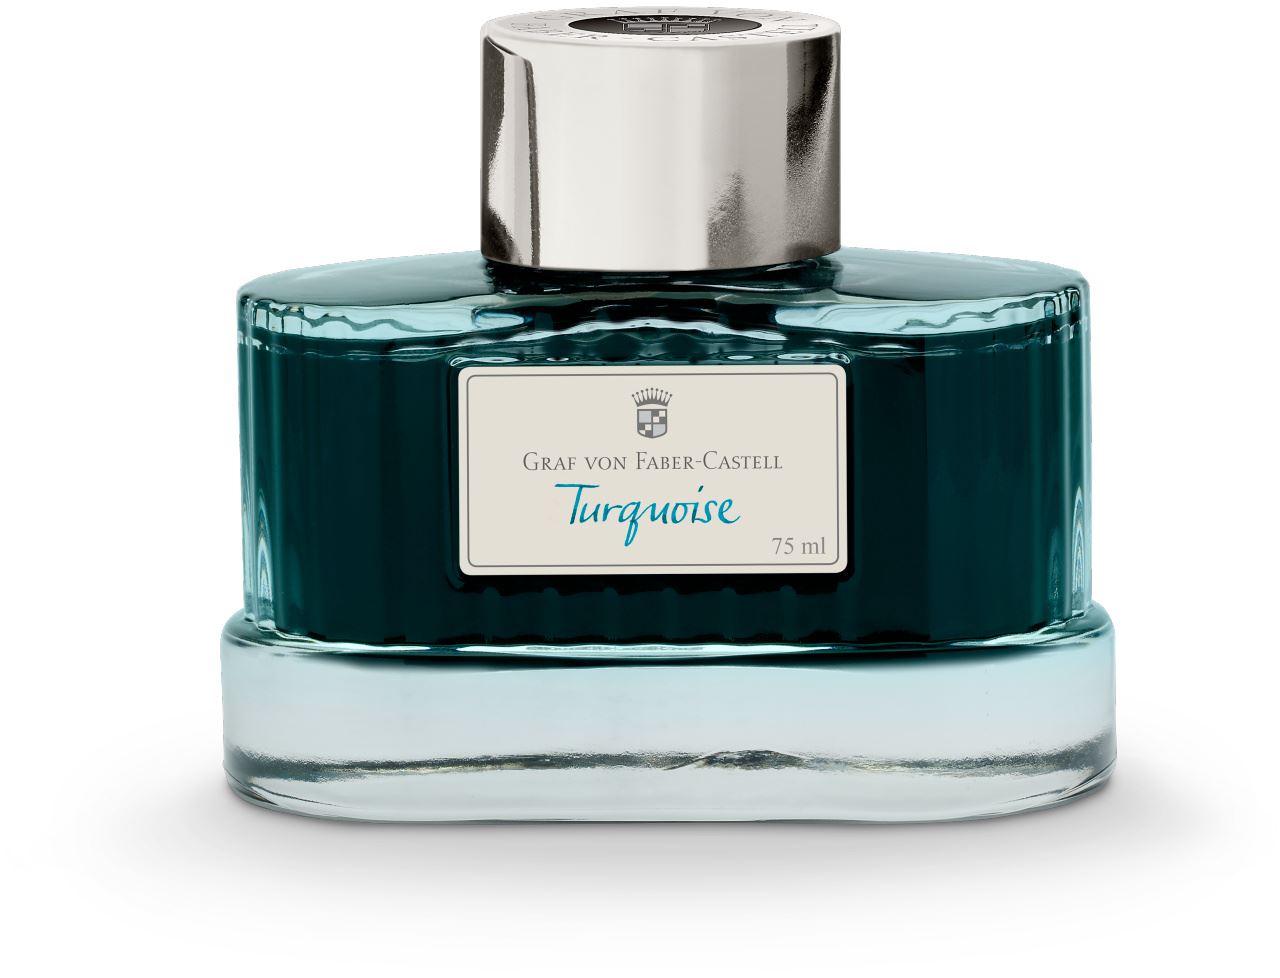 Graf-von-Faber-Castell - Ink bottle Turquoise, 75ml